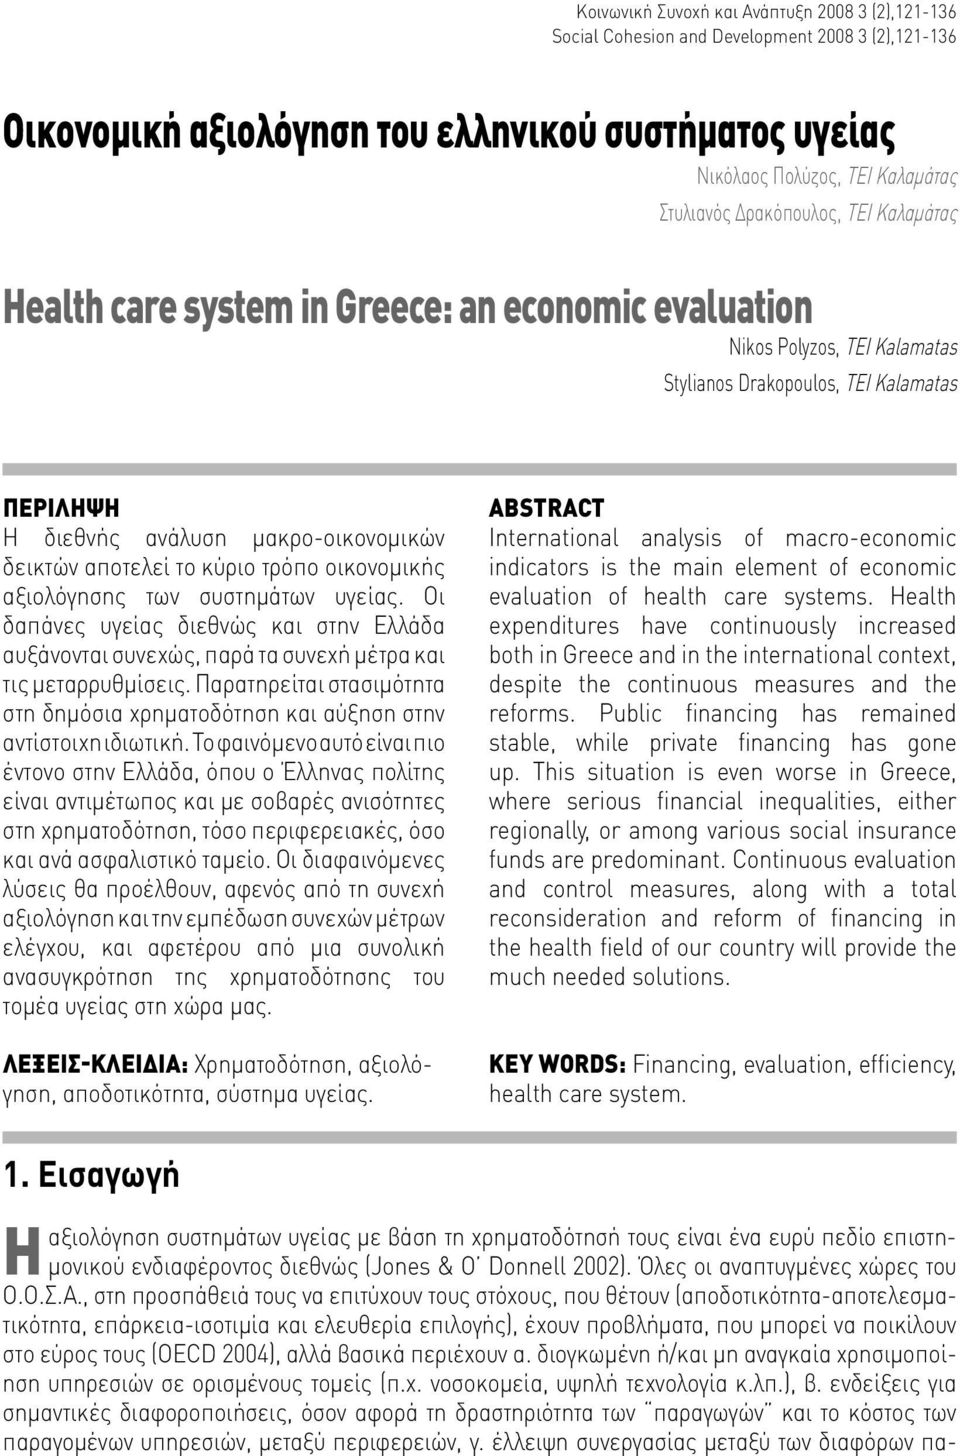 αποτελεί το κύριο τρόπο οικονομικής αξιολόγησης των συστημάτων υγείας. Οι δαπάνες υγείας διεθνώς και στην Ελλάδα αυξάνονται συνεχώς, παρά τα συνεχή μέτρα και τις μεταρρυθμίσεις.